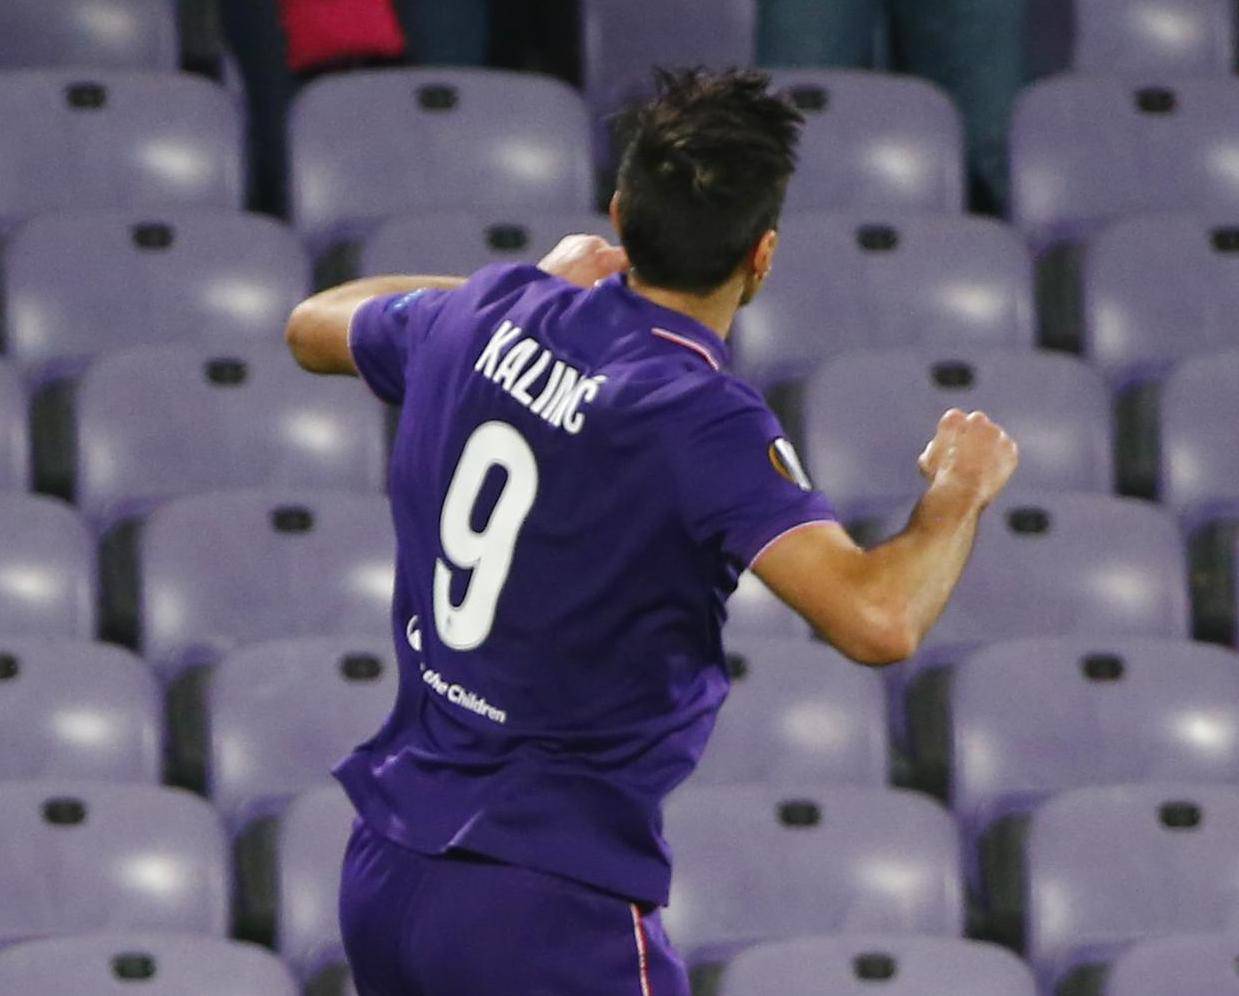 Fiorentina's Nikola Kalinic celebrates scoring their second goal